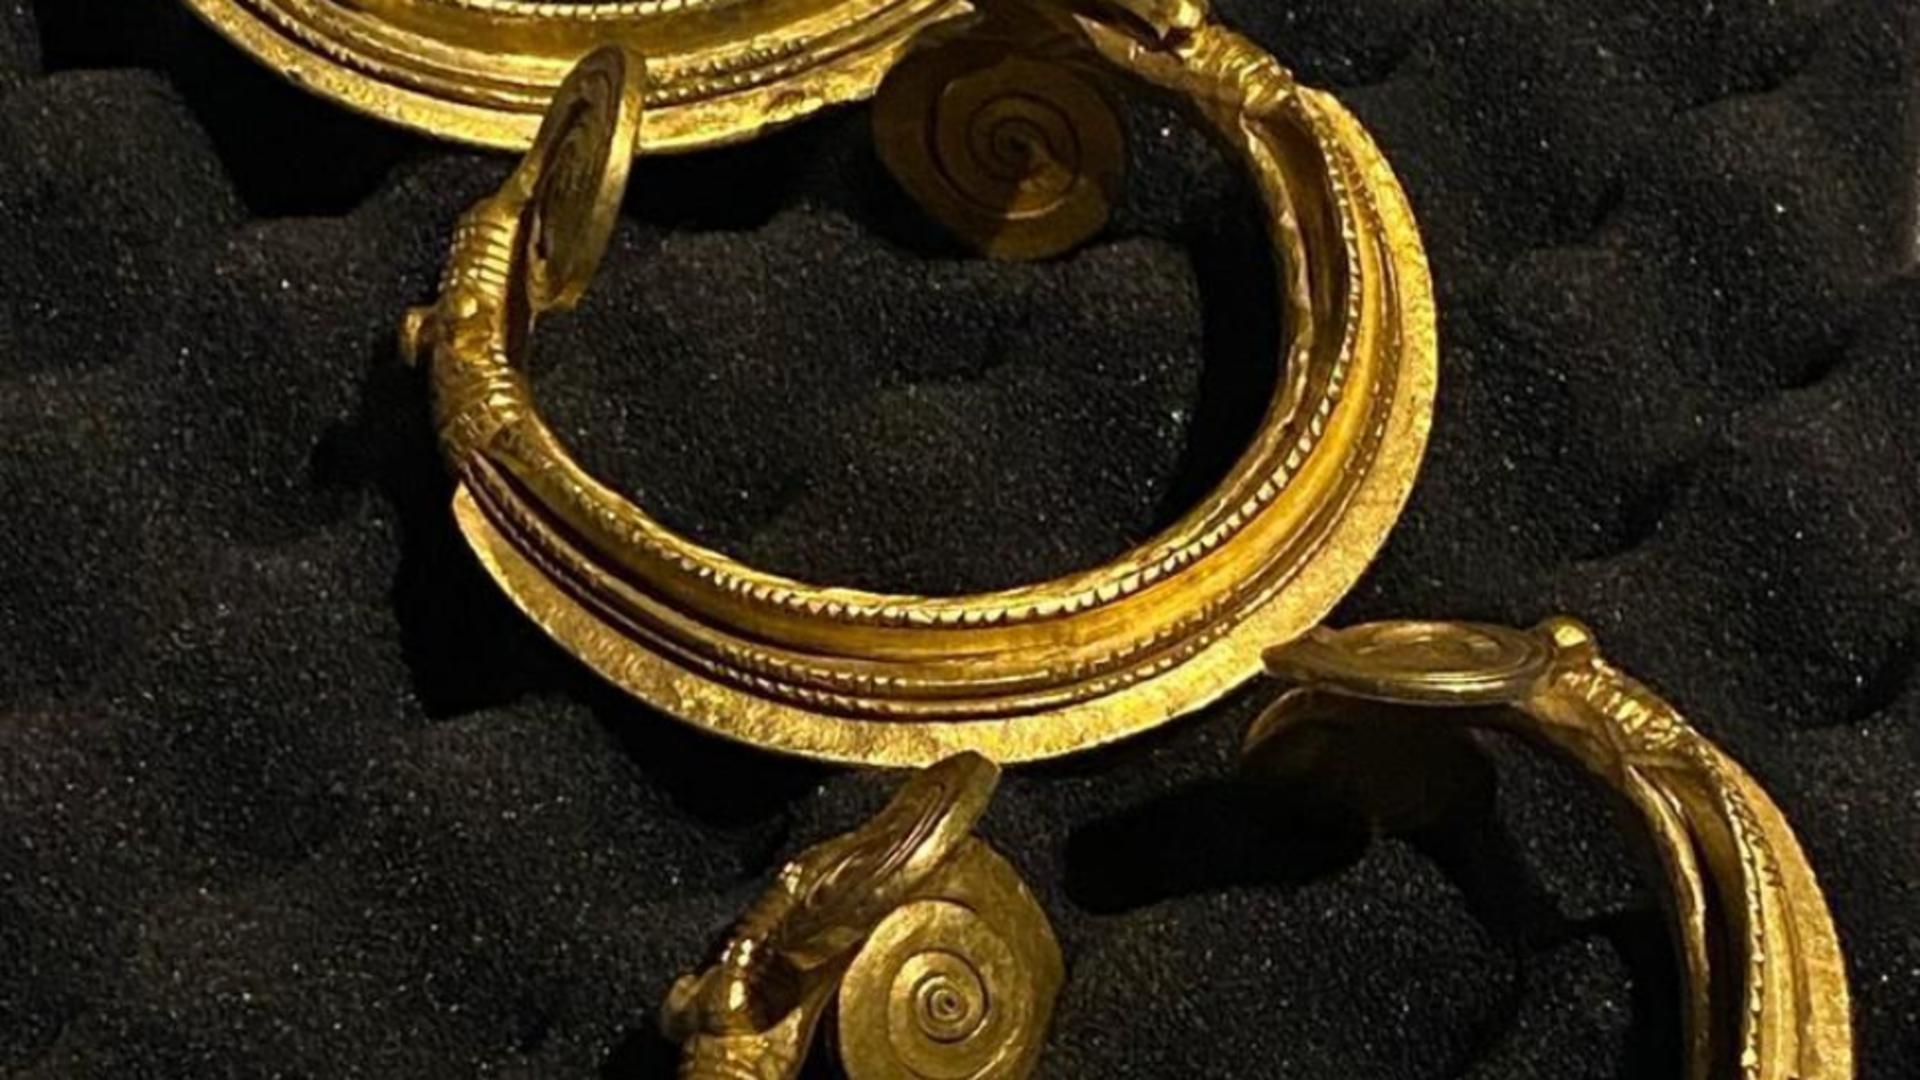 Trei brățări preistorice din aur, provenite din România, au fost readuse în țară după ce fuseseră furate. Unde au fost găsite